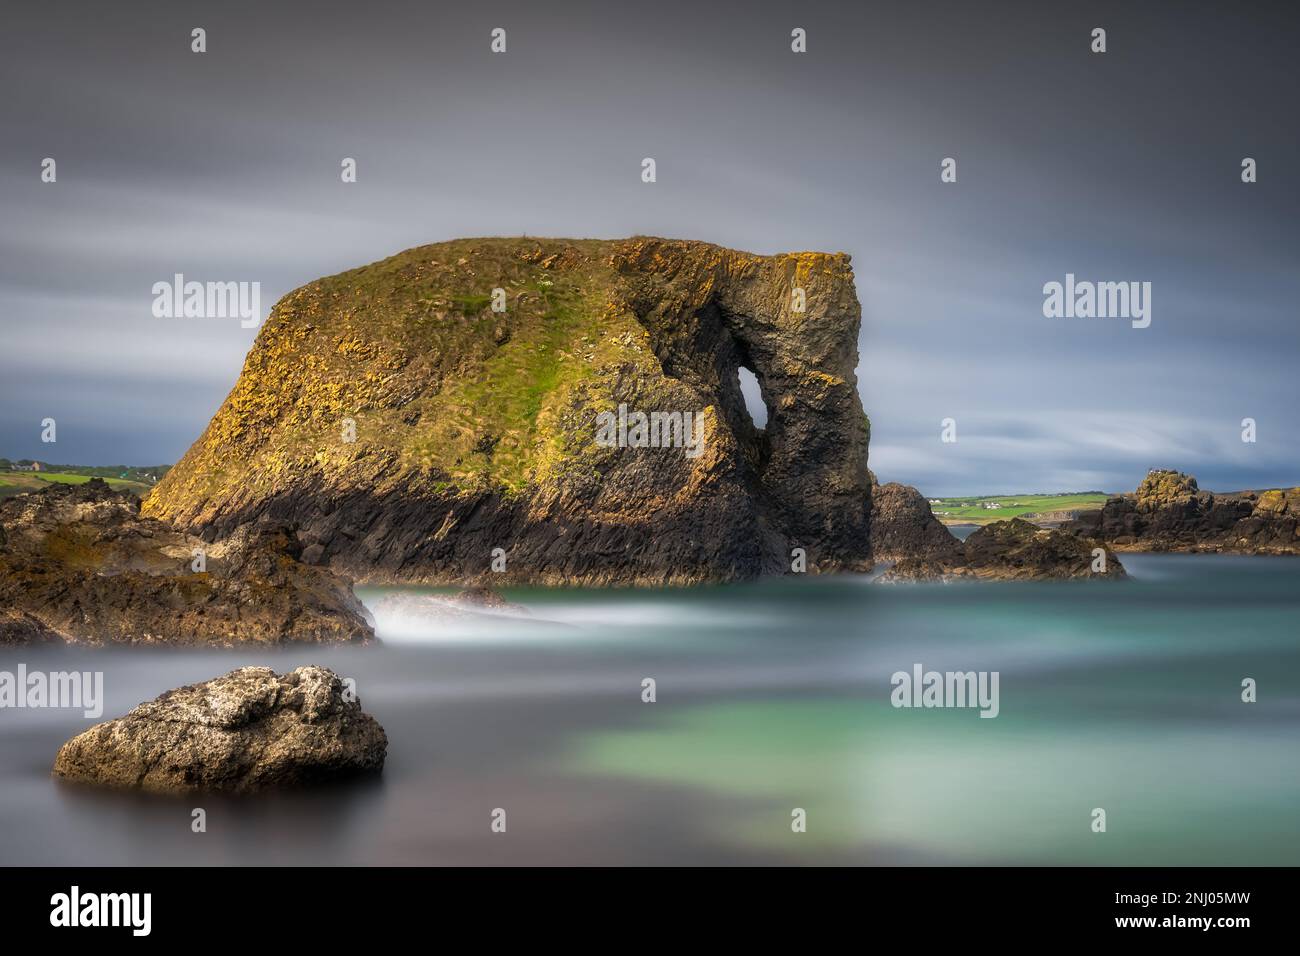 Wunderschöne Küstenfelsformation, Elefantenfelsen auf lange Sicht mit verschwommenem Wasser und Himmel, Wild Atlantic Way in Country Antrim, Nordirland Stockfoto